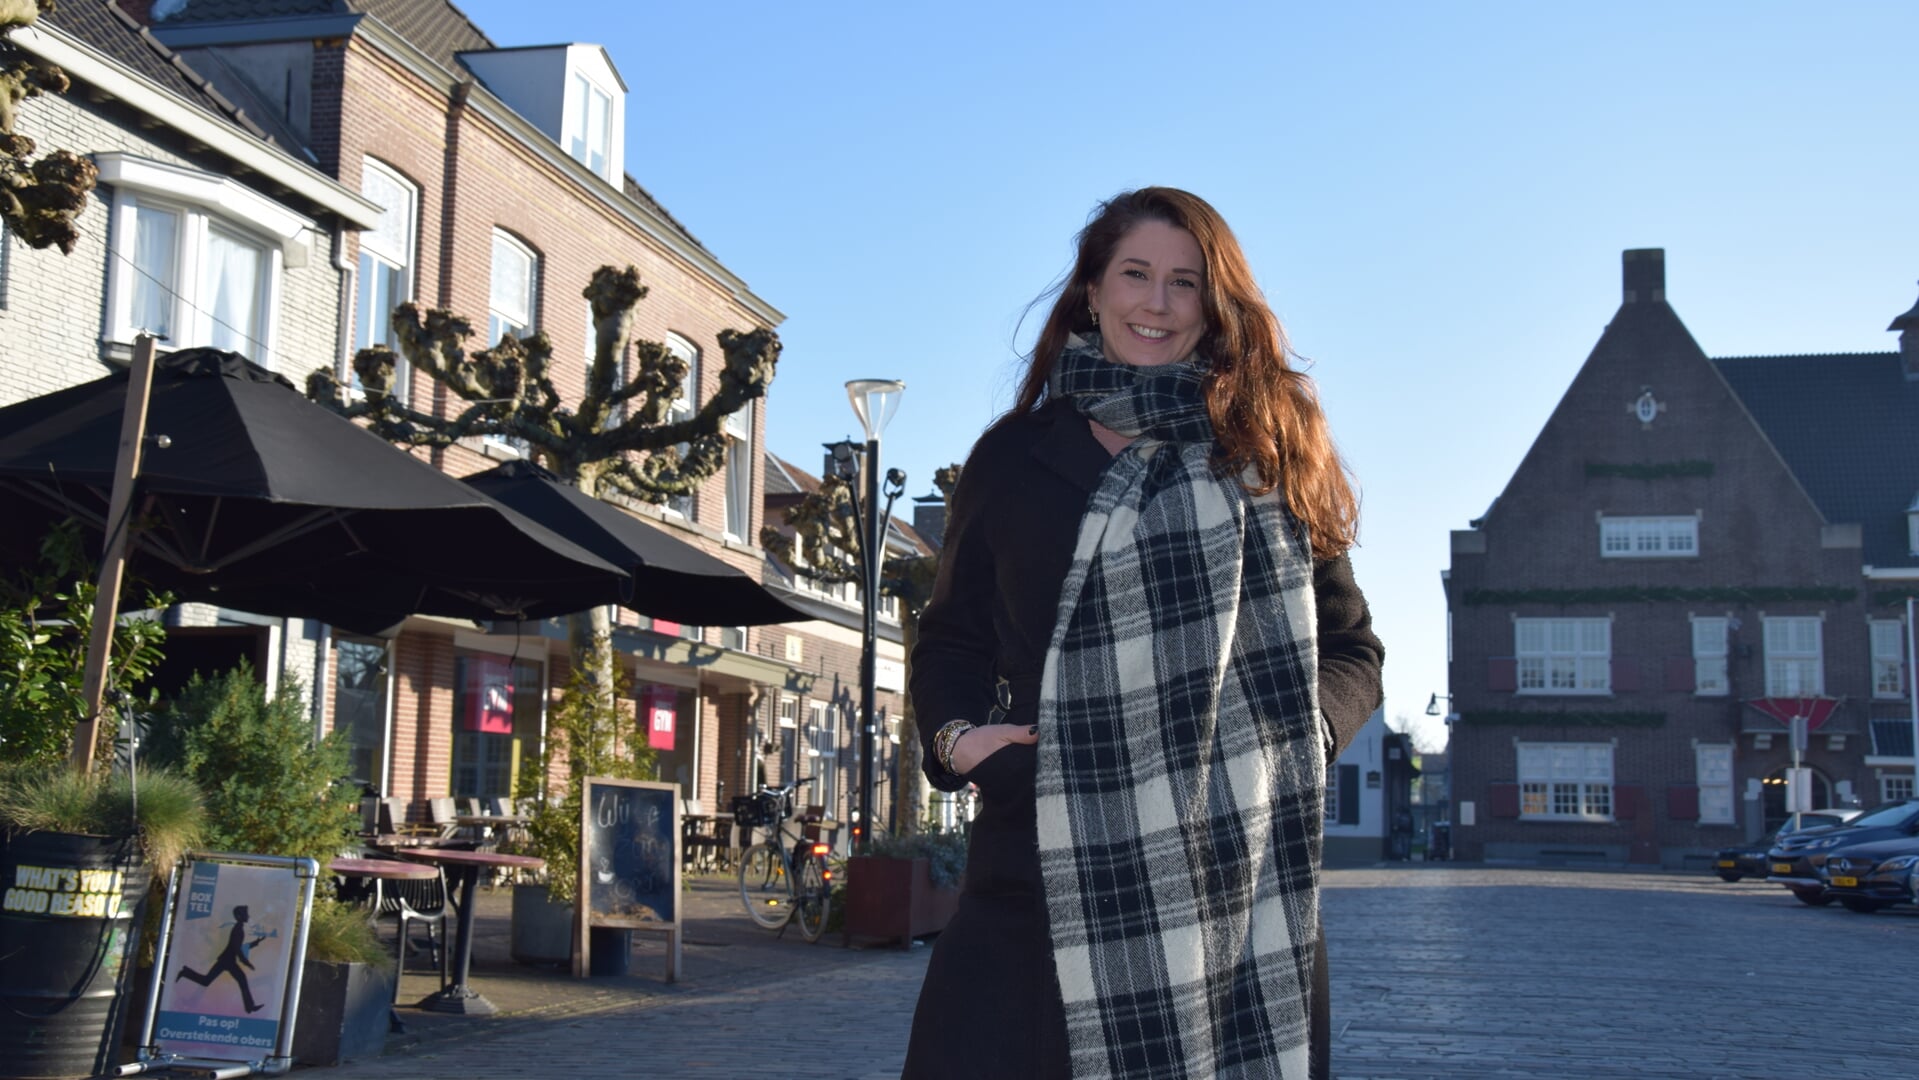 Carlijn van Berkel op de plek waar ze graag komt in Boxtel en waar ze veel mensen heeft leren kennen: de Markt.